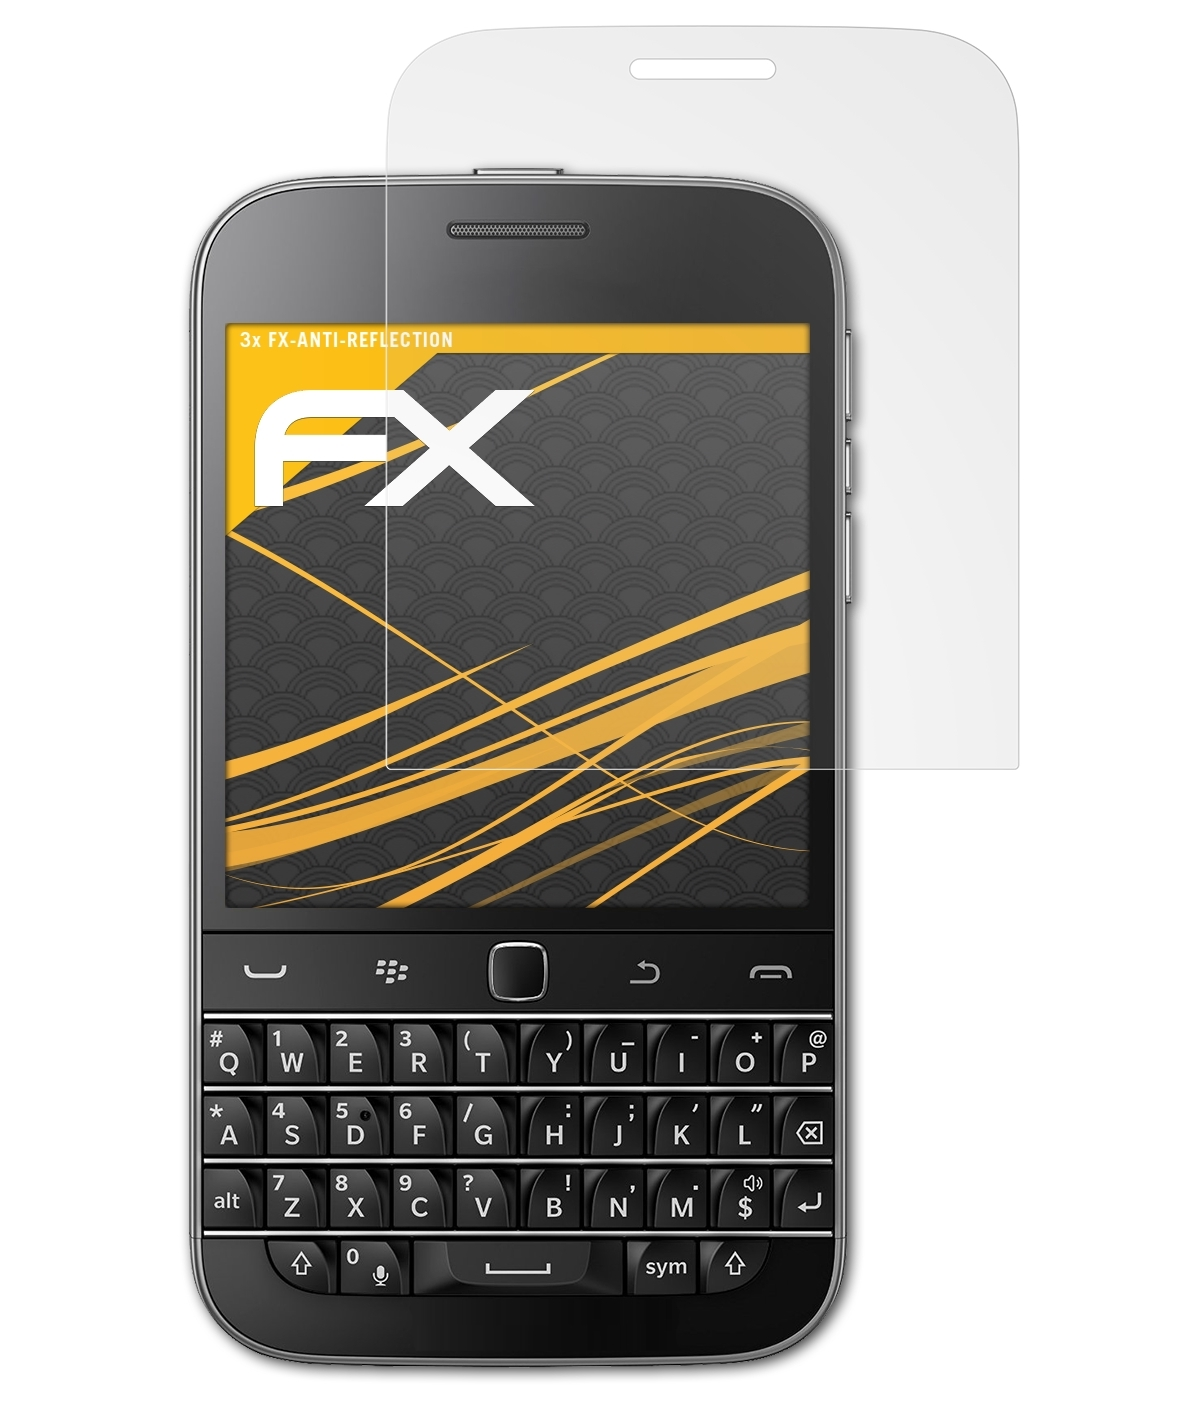 Classic Displayschutz(für FX-Antireflex 3x ATFOLIX Non Camera) Blackberry